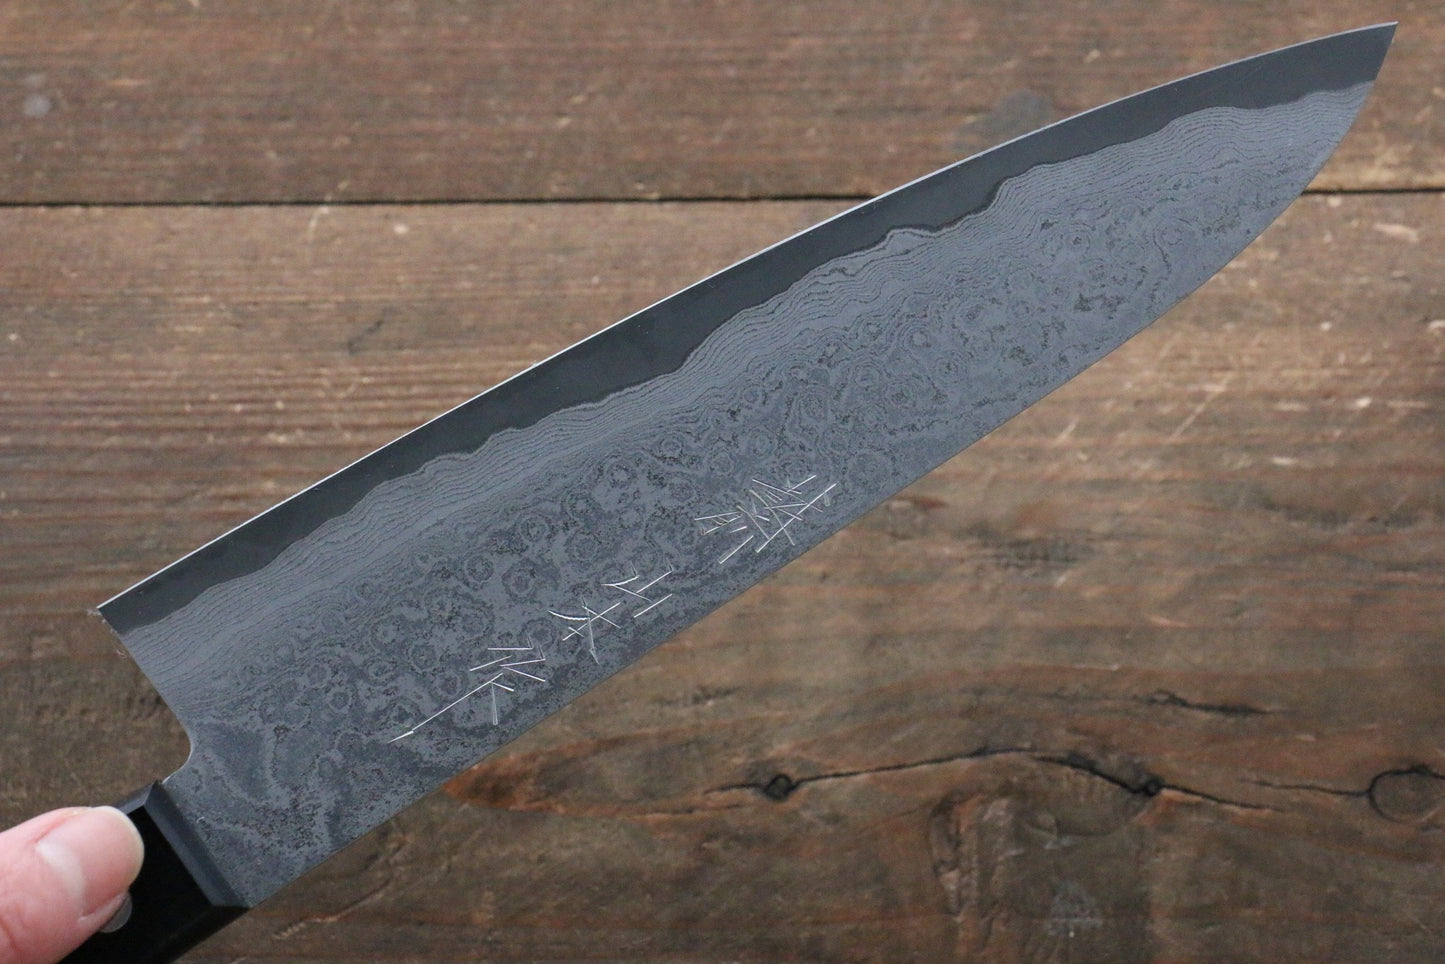 Marke Nao Yamamoto VG10 Schwarzer Damaststahl Gyuto Mehrzweckmesser Japanisches Messer 200 mm schwarzer Pakkaholzgriff